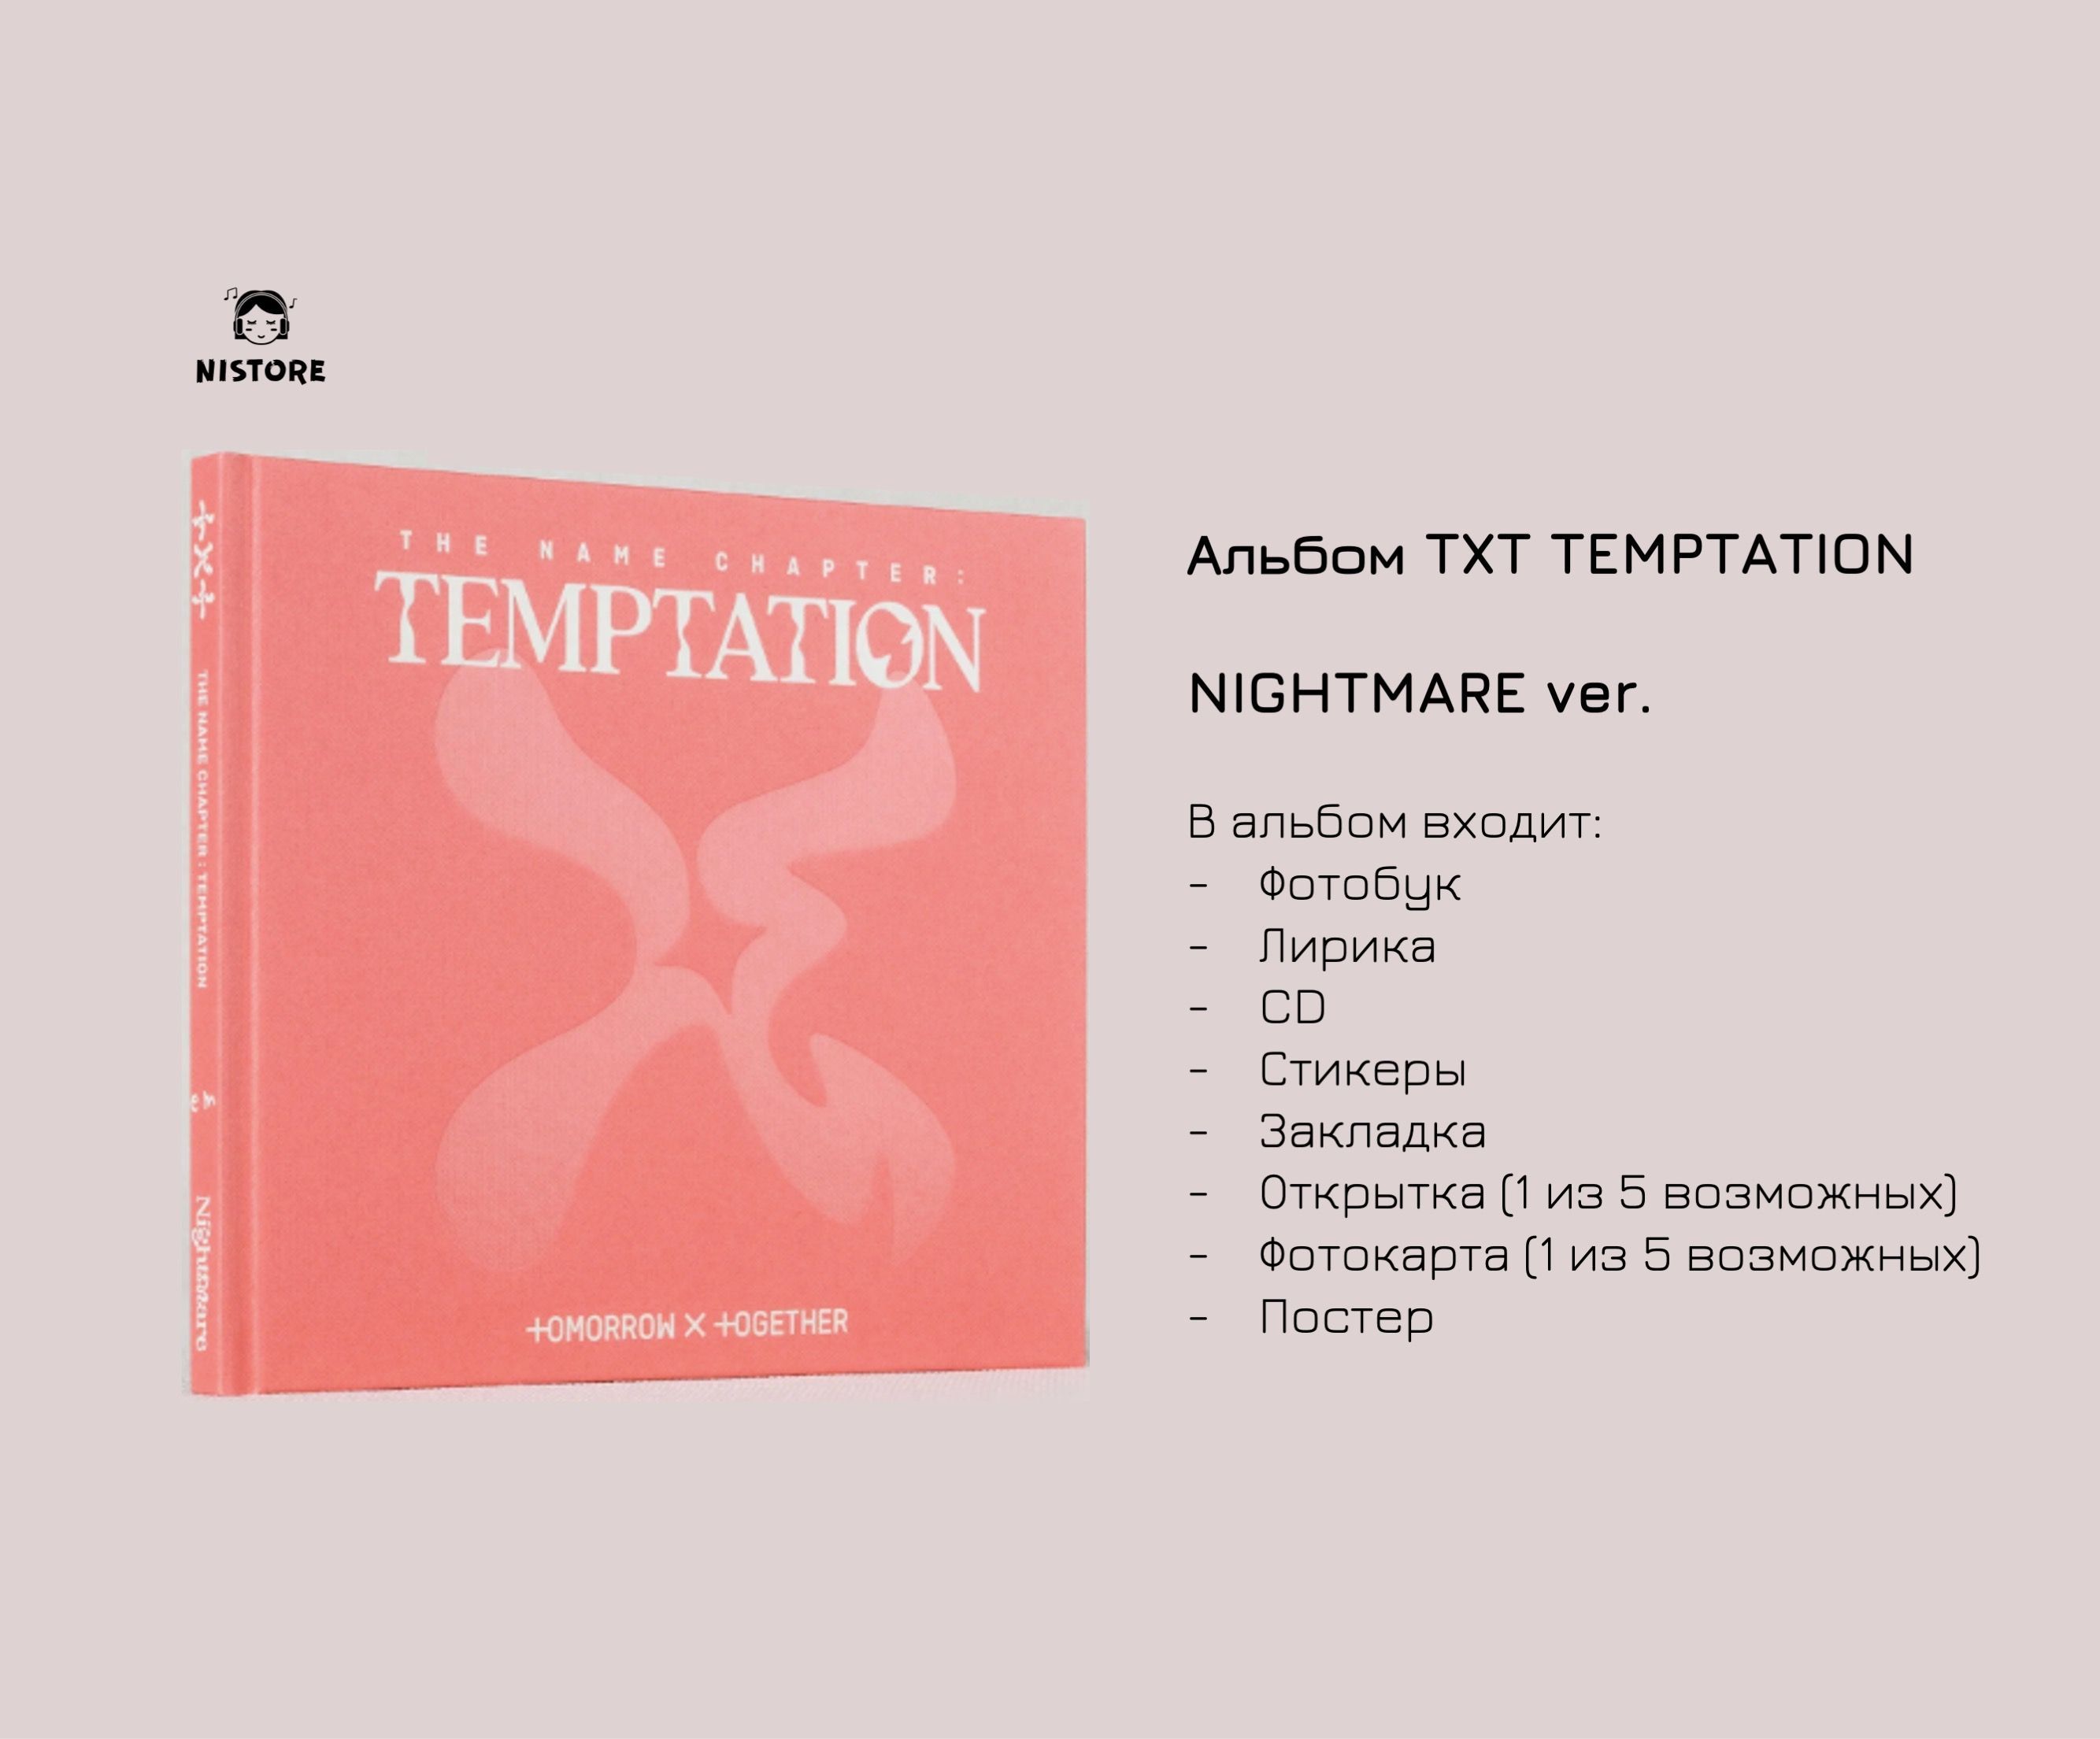 Альбомы тхт песни. Альбом тхт. Альбом тхт Temptation. Txt the name Chapter Temptation альбом. Альбом тхт-Чаптер.